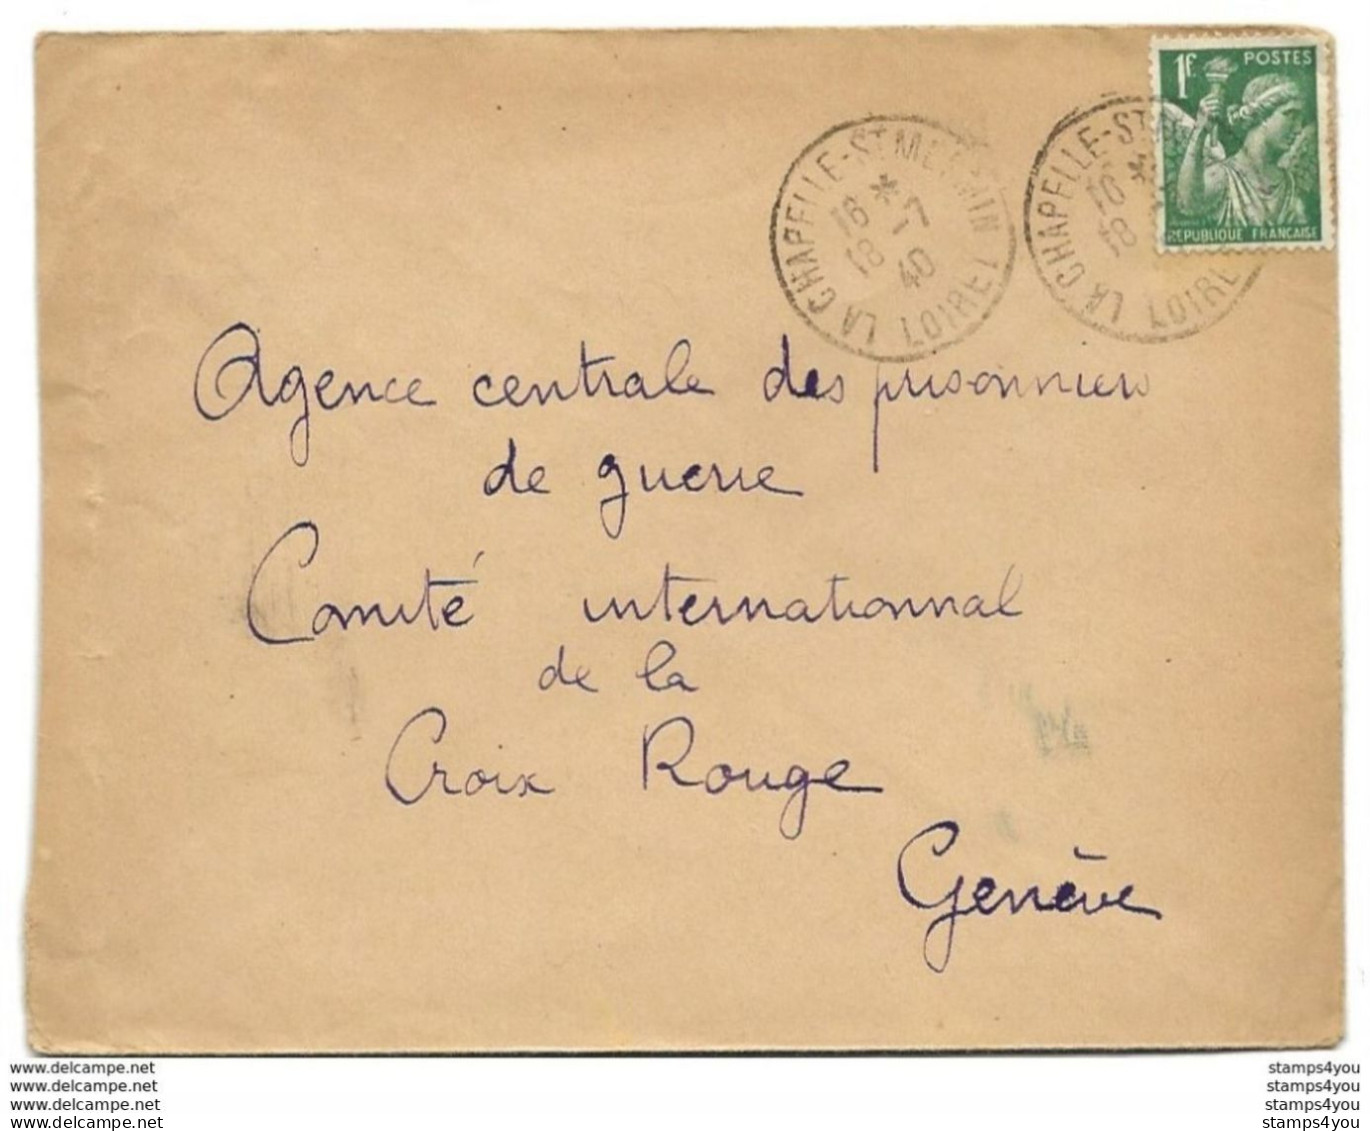 221 - 90 - Enveloppe Envoyée Du Loiret à La Croix Rouge Genève 1940 - Agence Prisonniers De Guerre - WW II